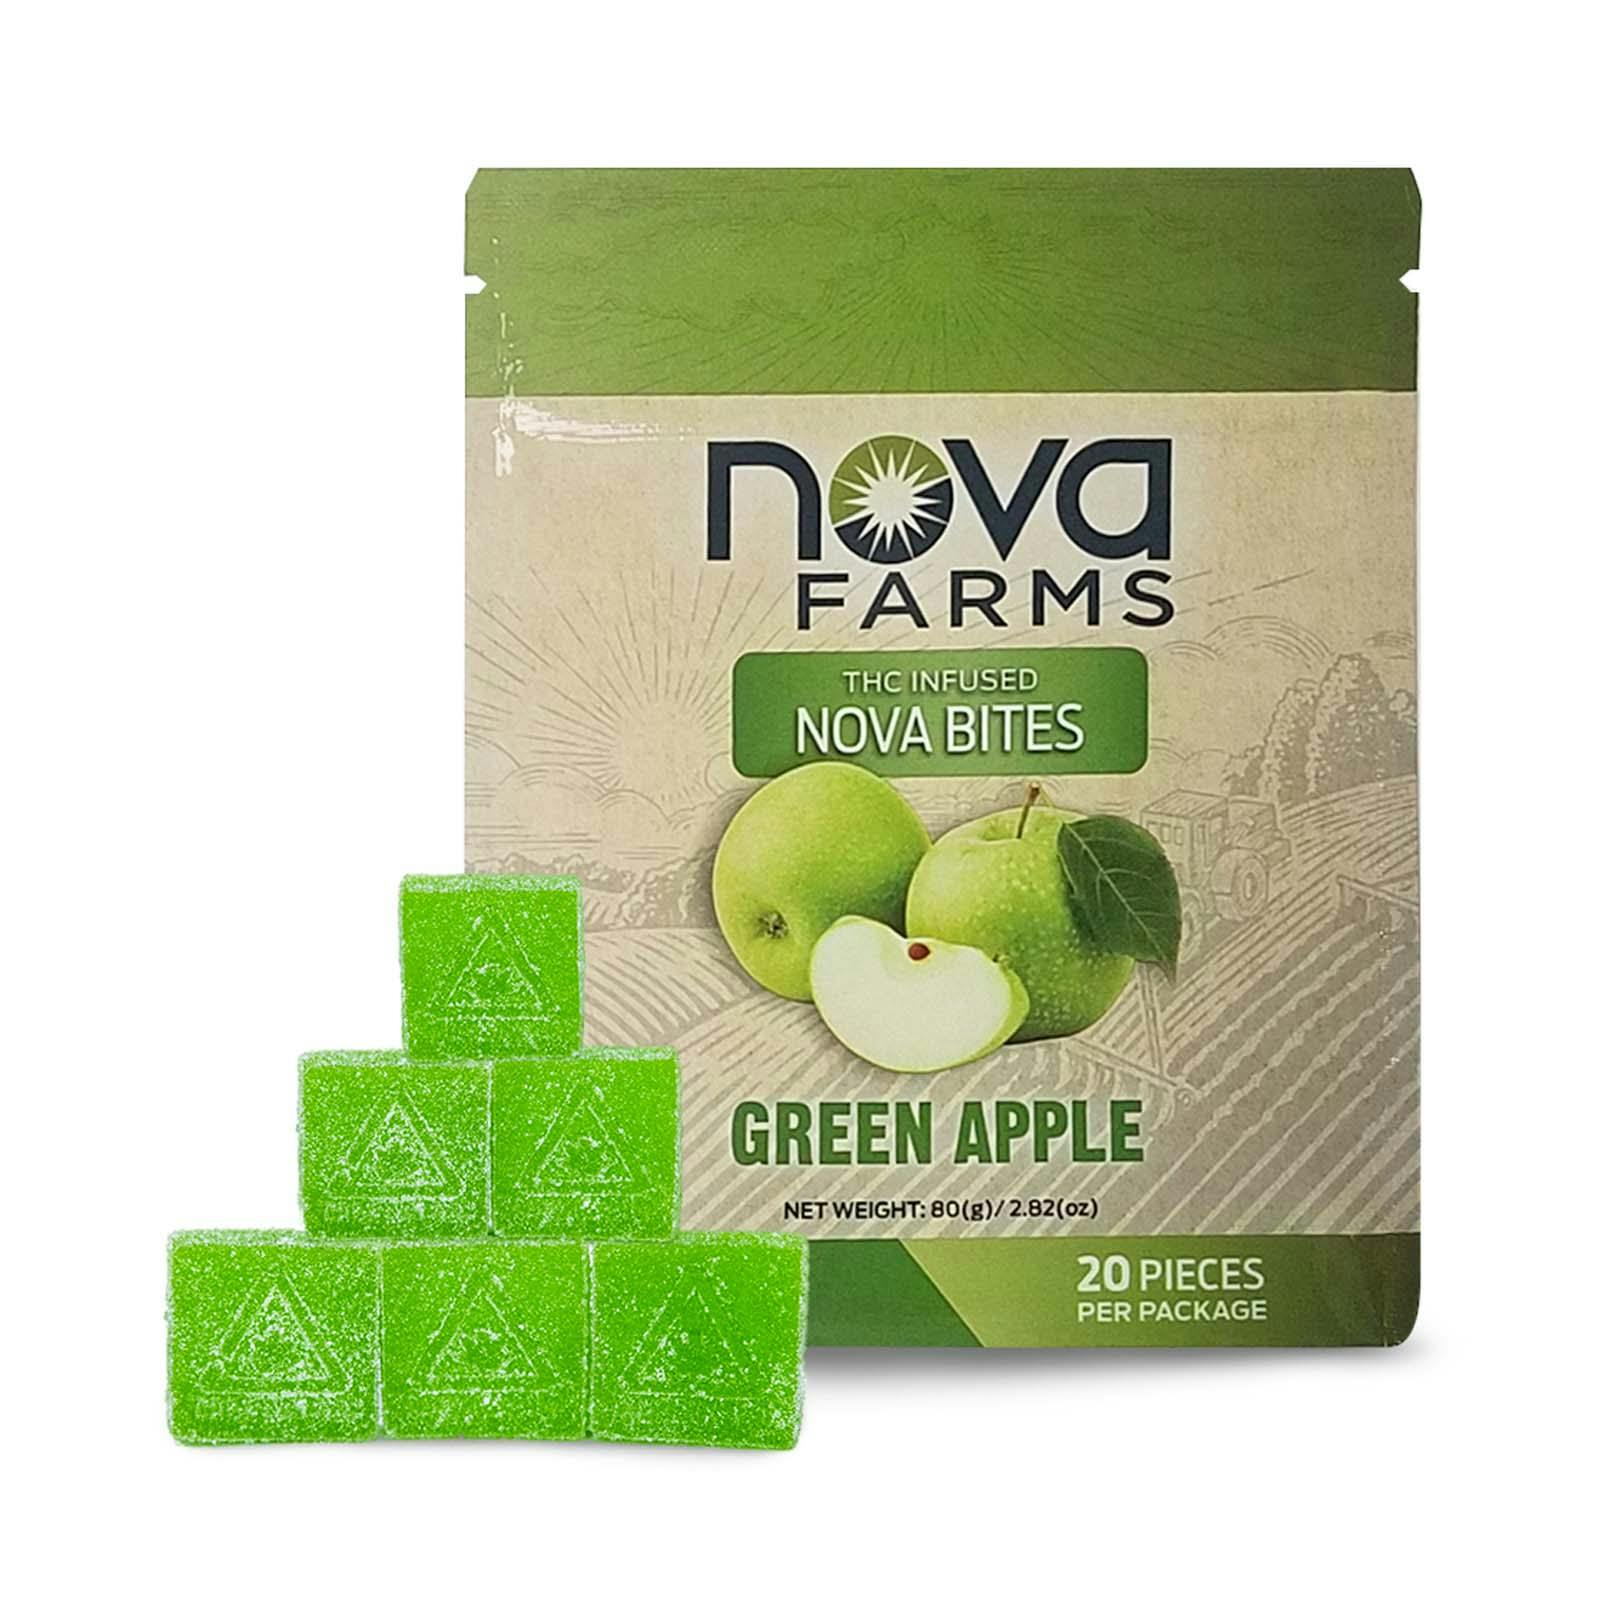 Image of Green Apple Nova Bites 20-pack